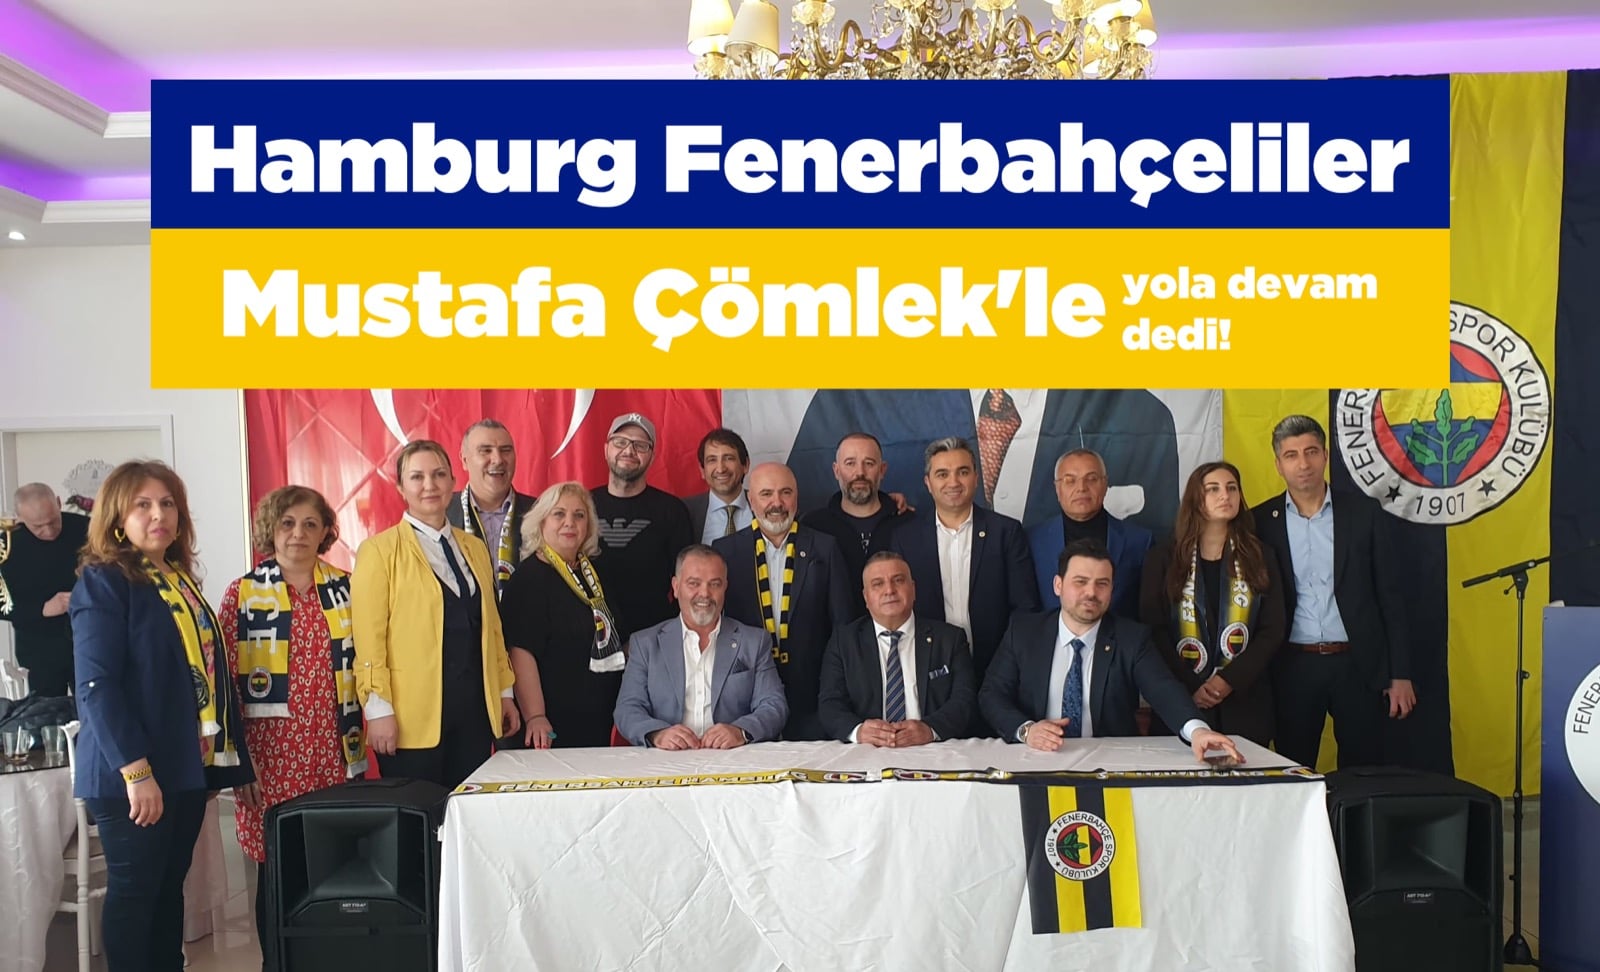 Hamburg Fenerbahçeliler bir kez daha Çömlek'le yola devam